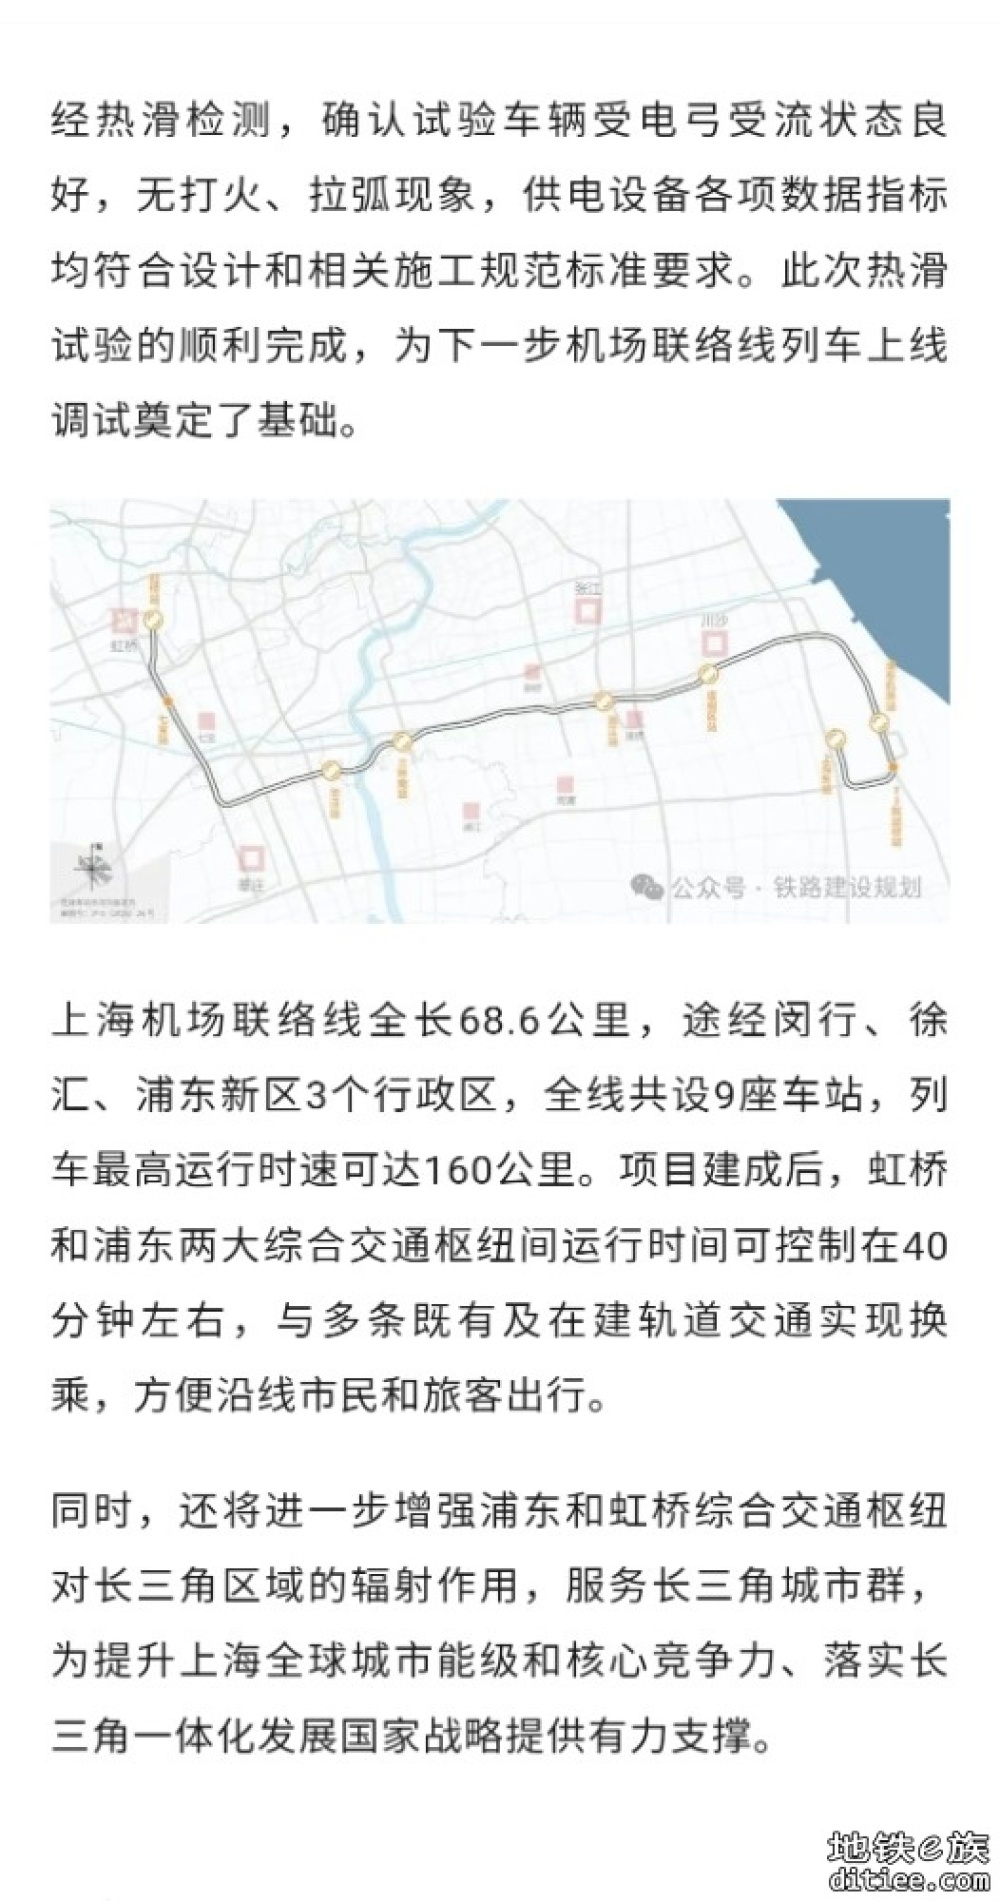 上海机场联络线浦西段接触网热滑试验顺利完成